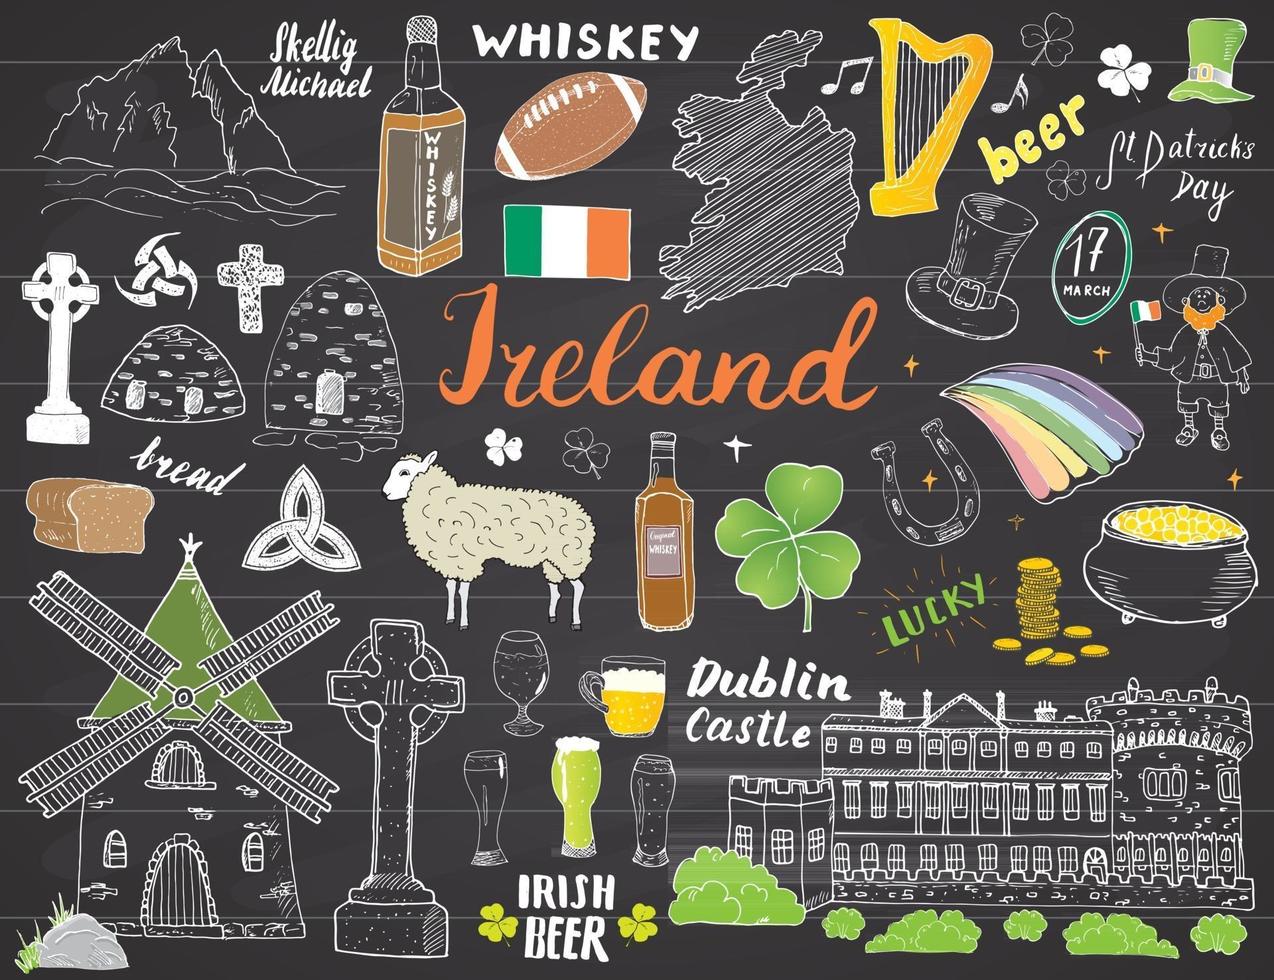 ierland schets doodles. hand getrokken Ierse elementen instellen met vlag en kaart van Ierland, Keltisch kruis, kasteel, klaver, Keltische harp, molen en schapen, whiskyflessen en Iers bier, vectorillustratie vector